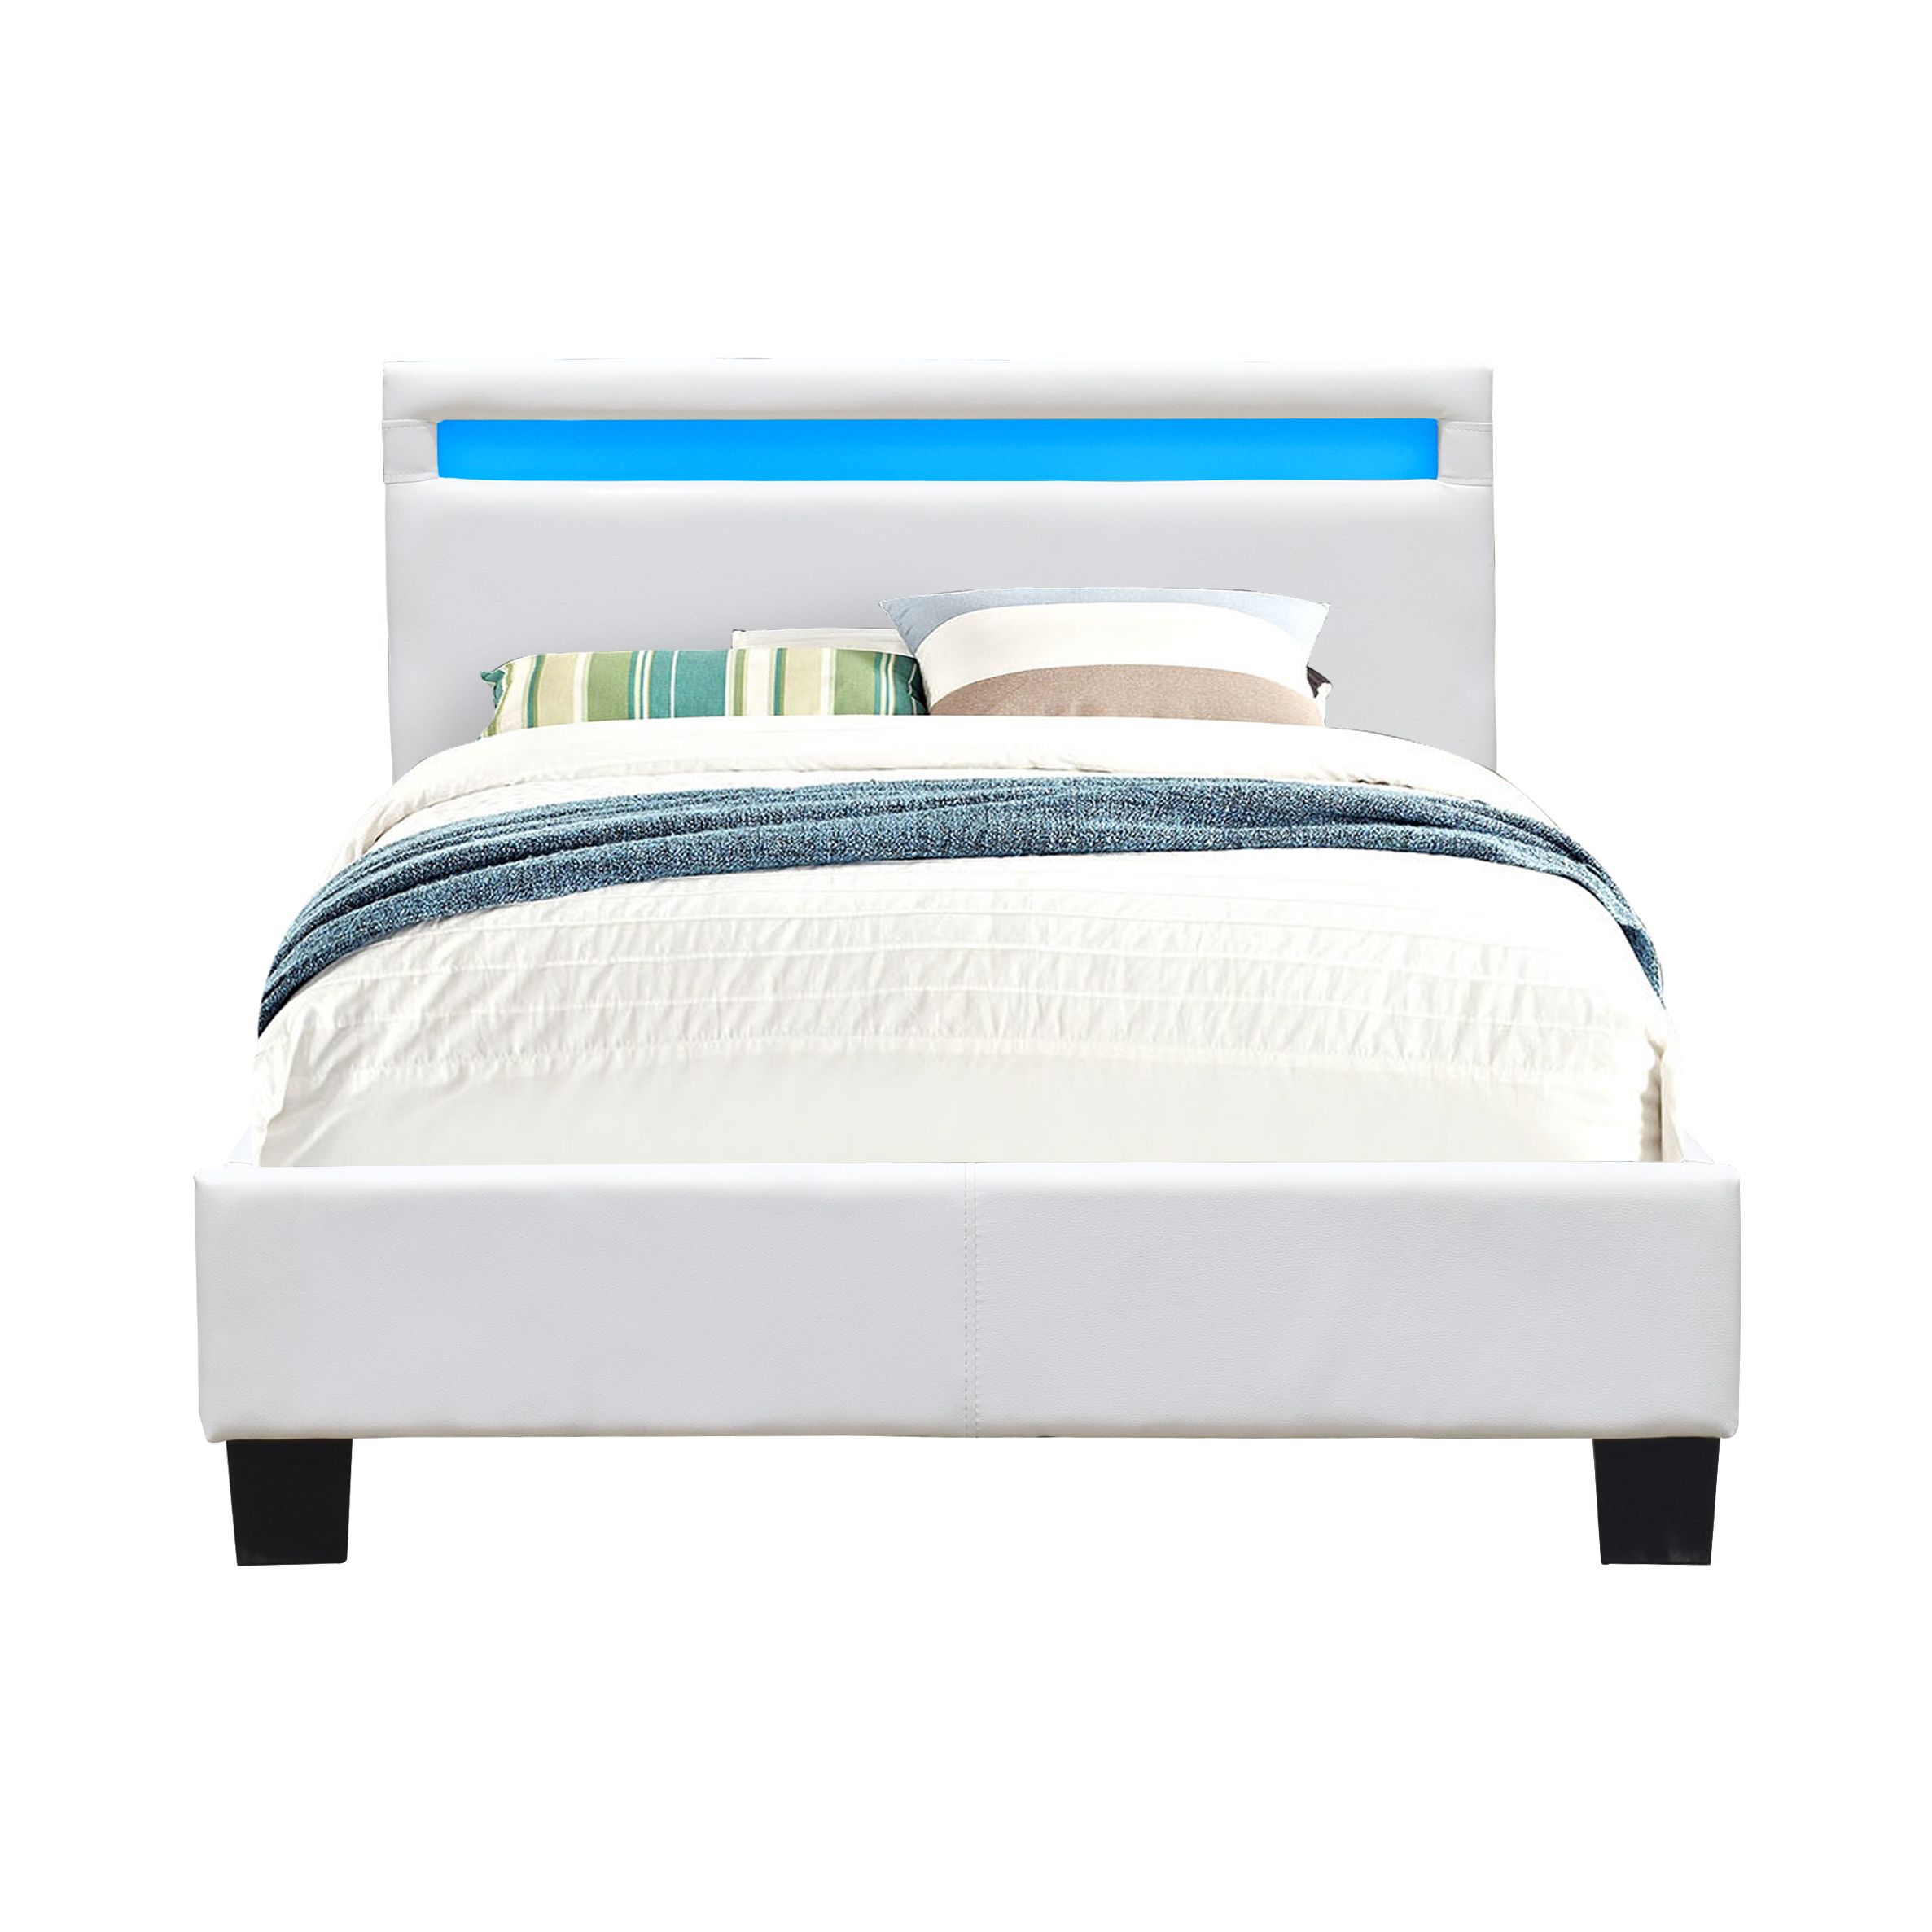 lit simple en bois - king of dreams - solide et confortable - 90x190 cm - blanc